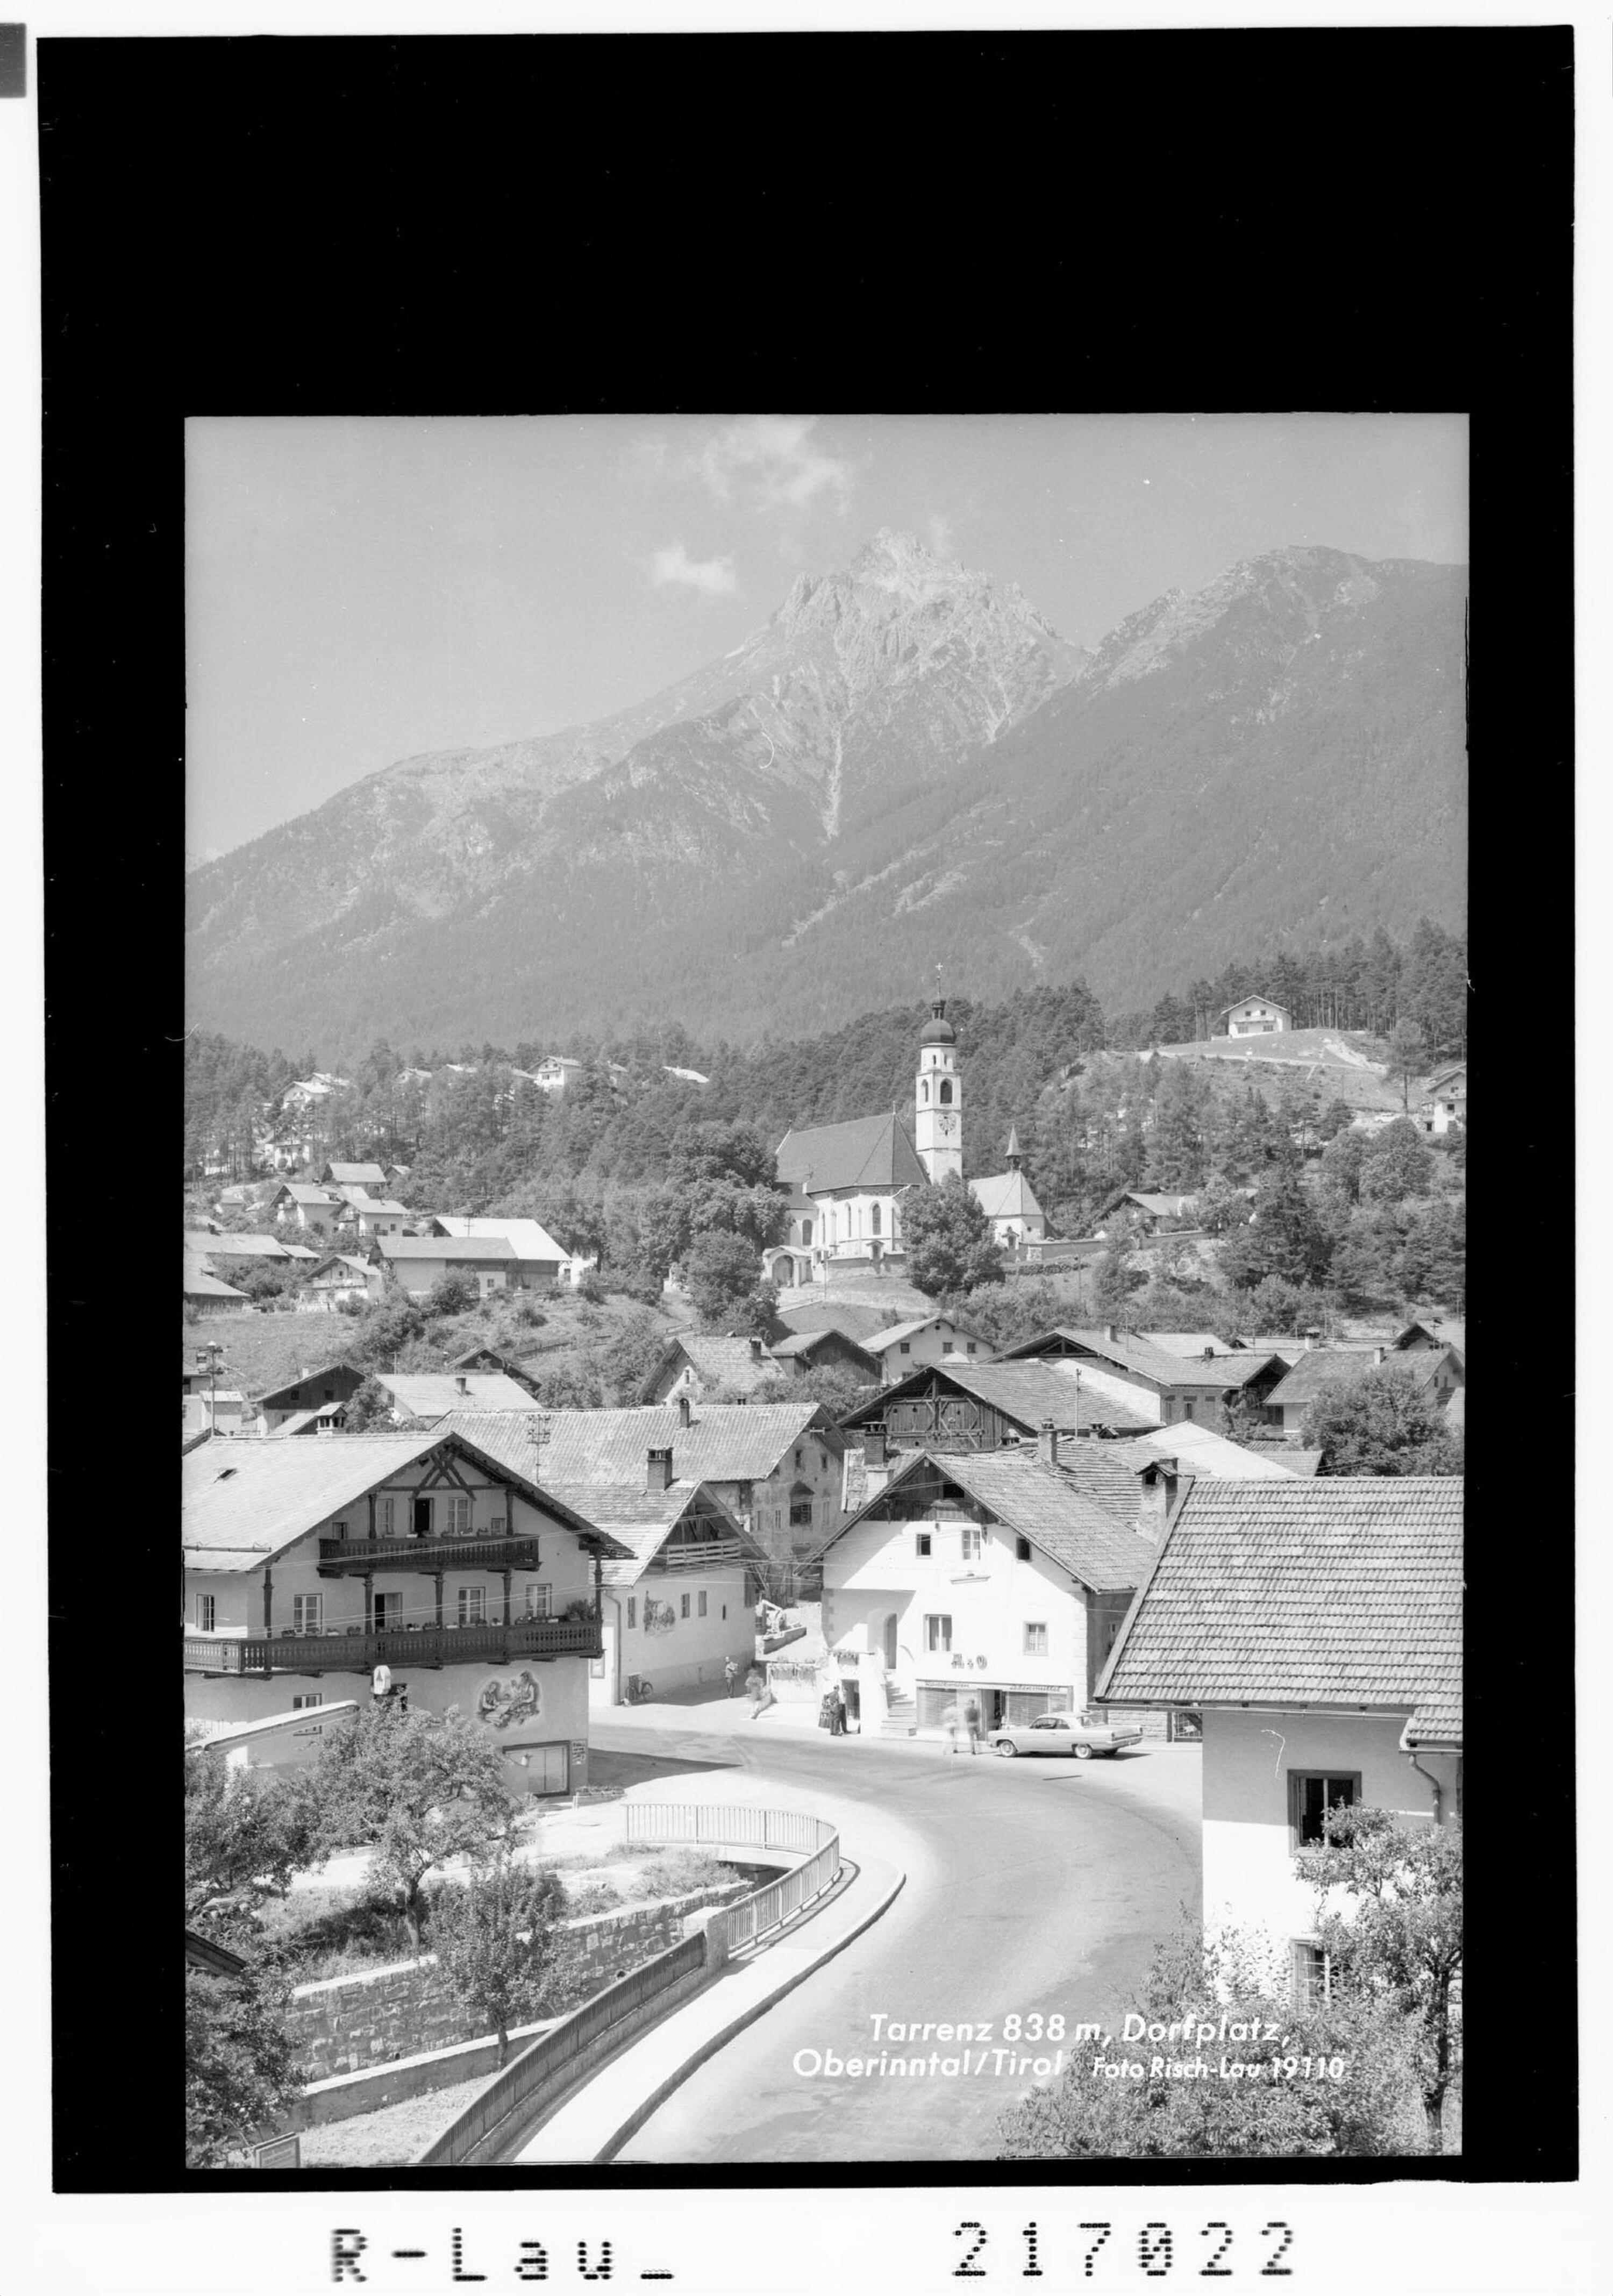 Tarrenz 838 m, Dorfplatz, Oberinntal / Tirol></div>


    <hr>
    <div class=